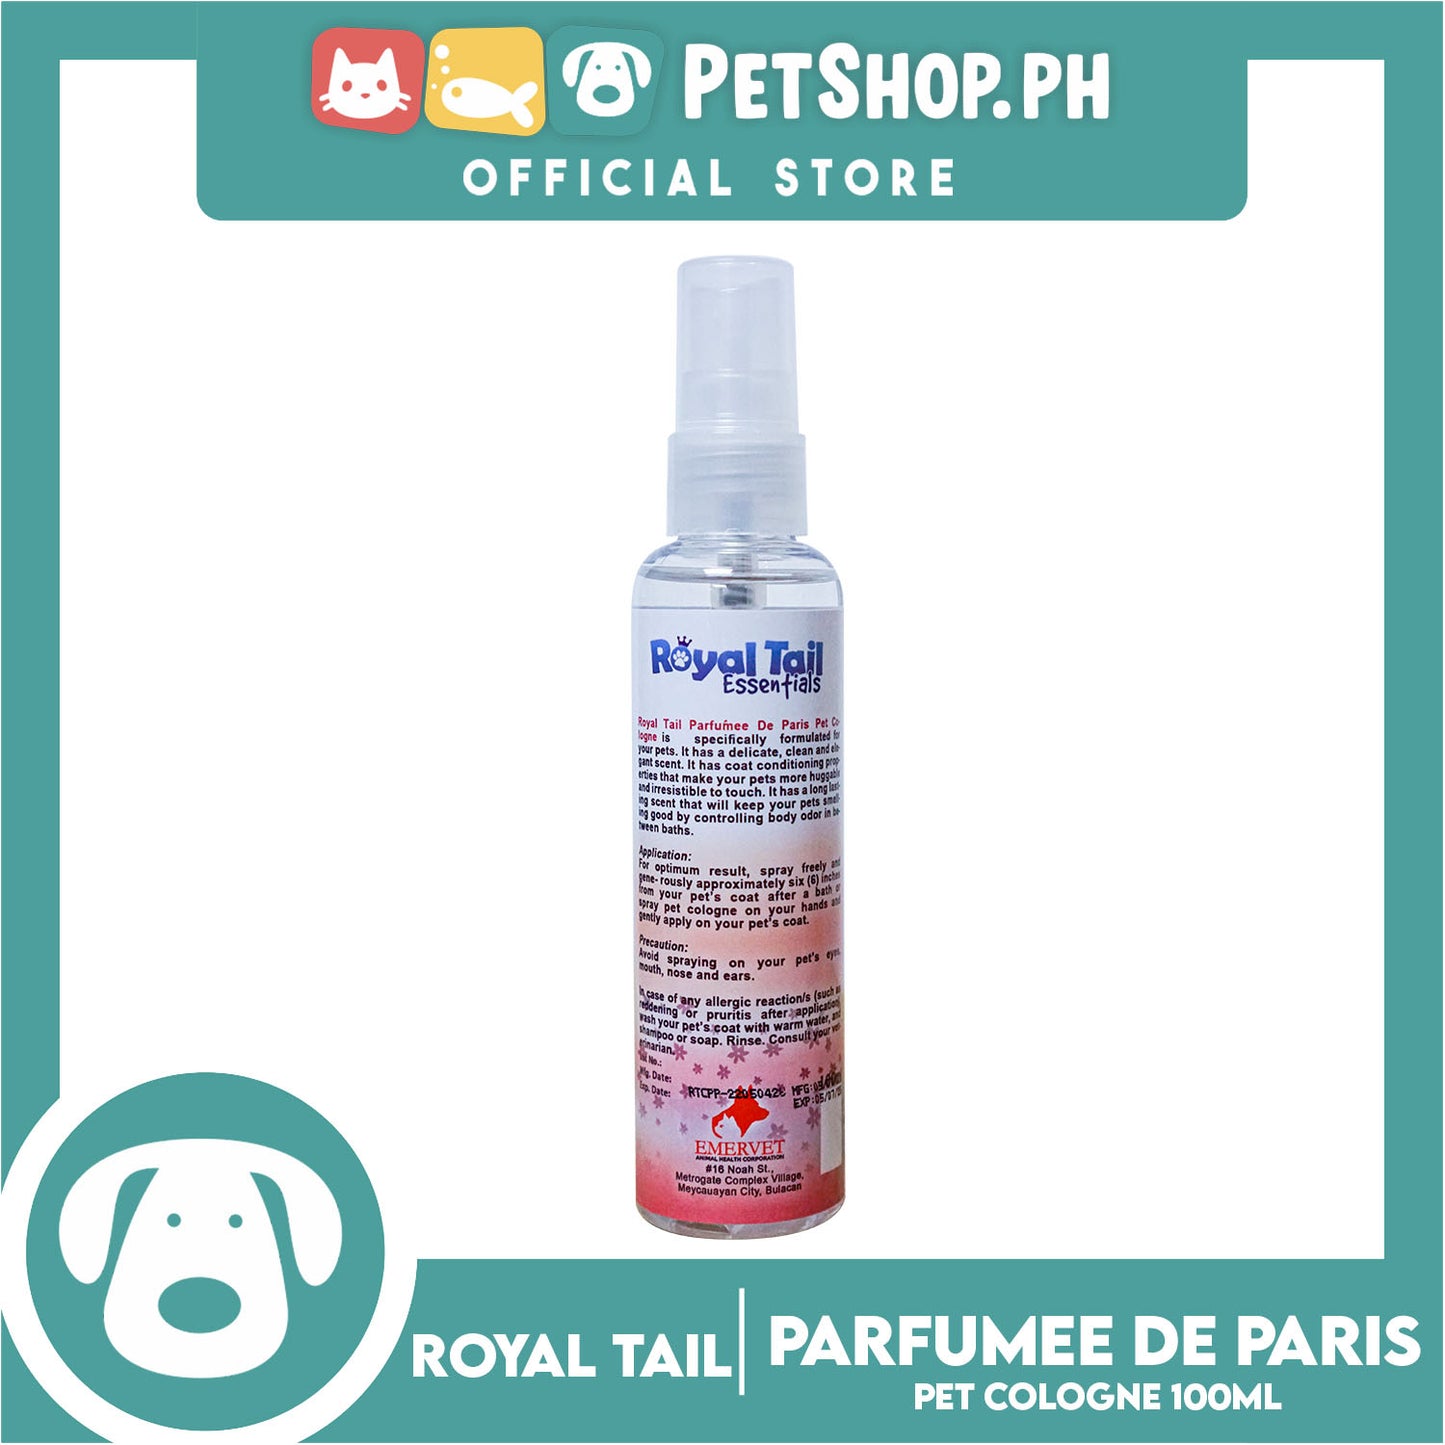 Royal Tail Essentials Pet Cologne (Parfumee de  Paris) 100ml